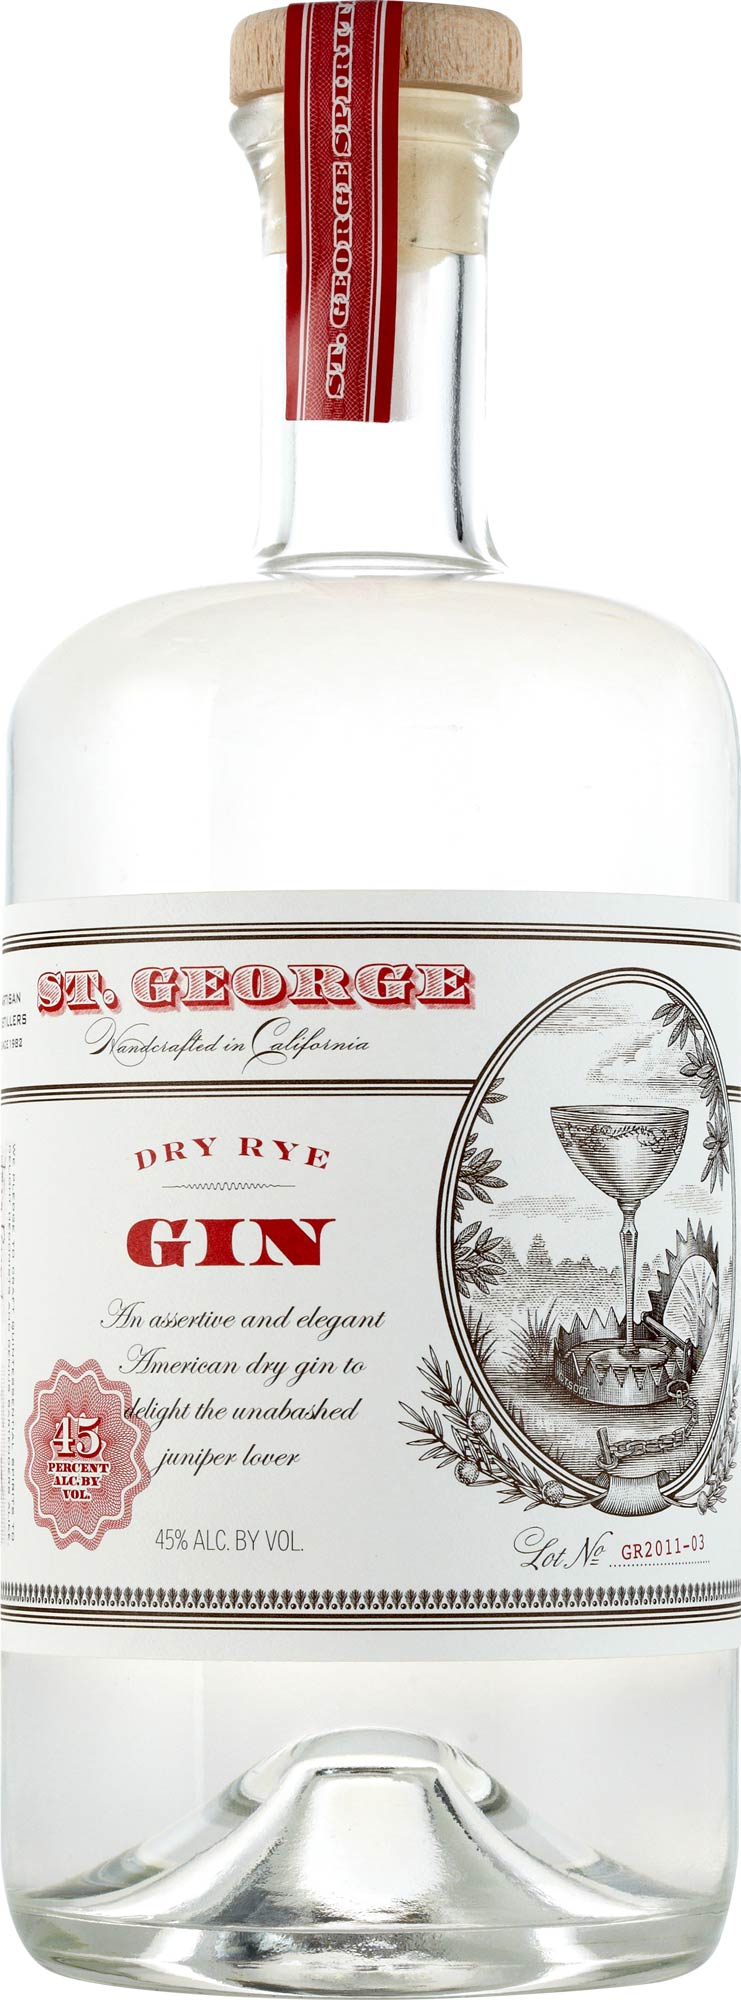 St. George Gin Dry Rye